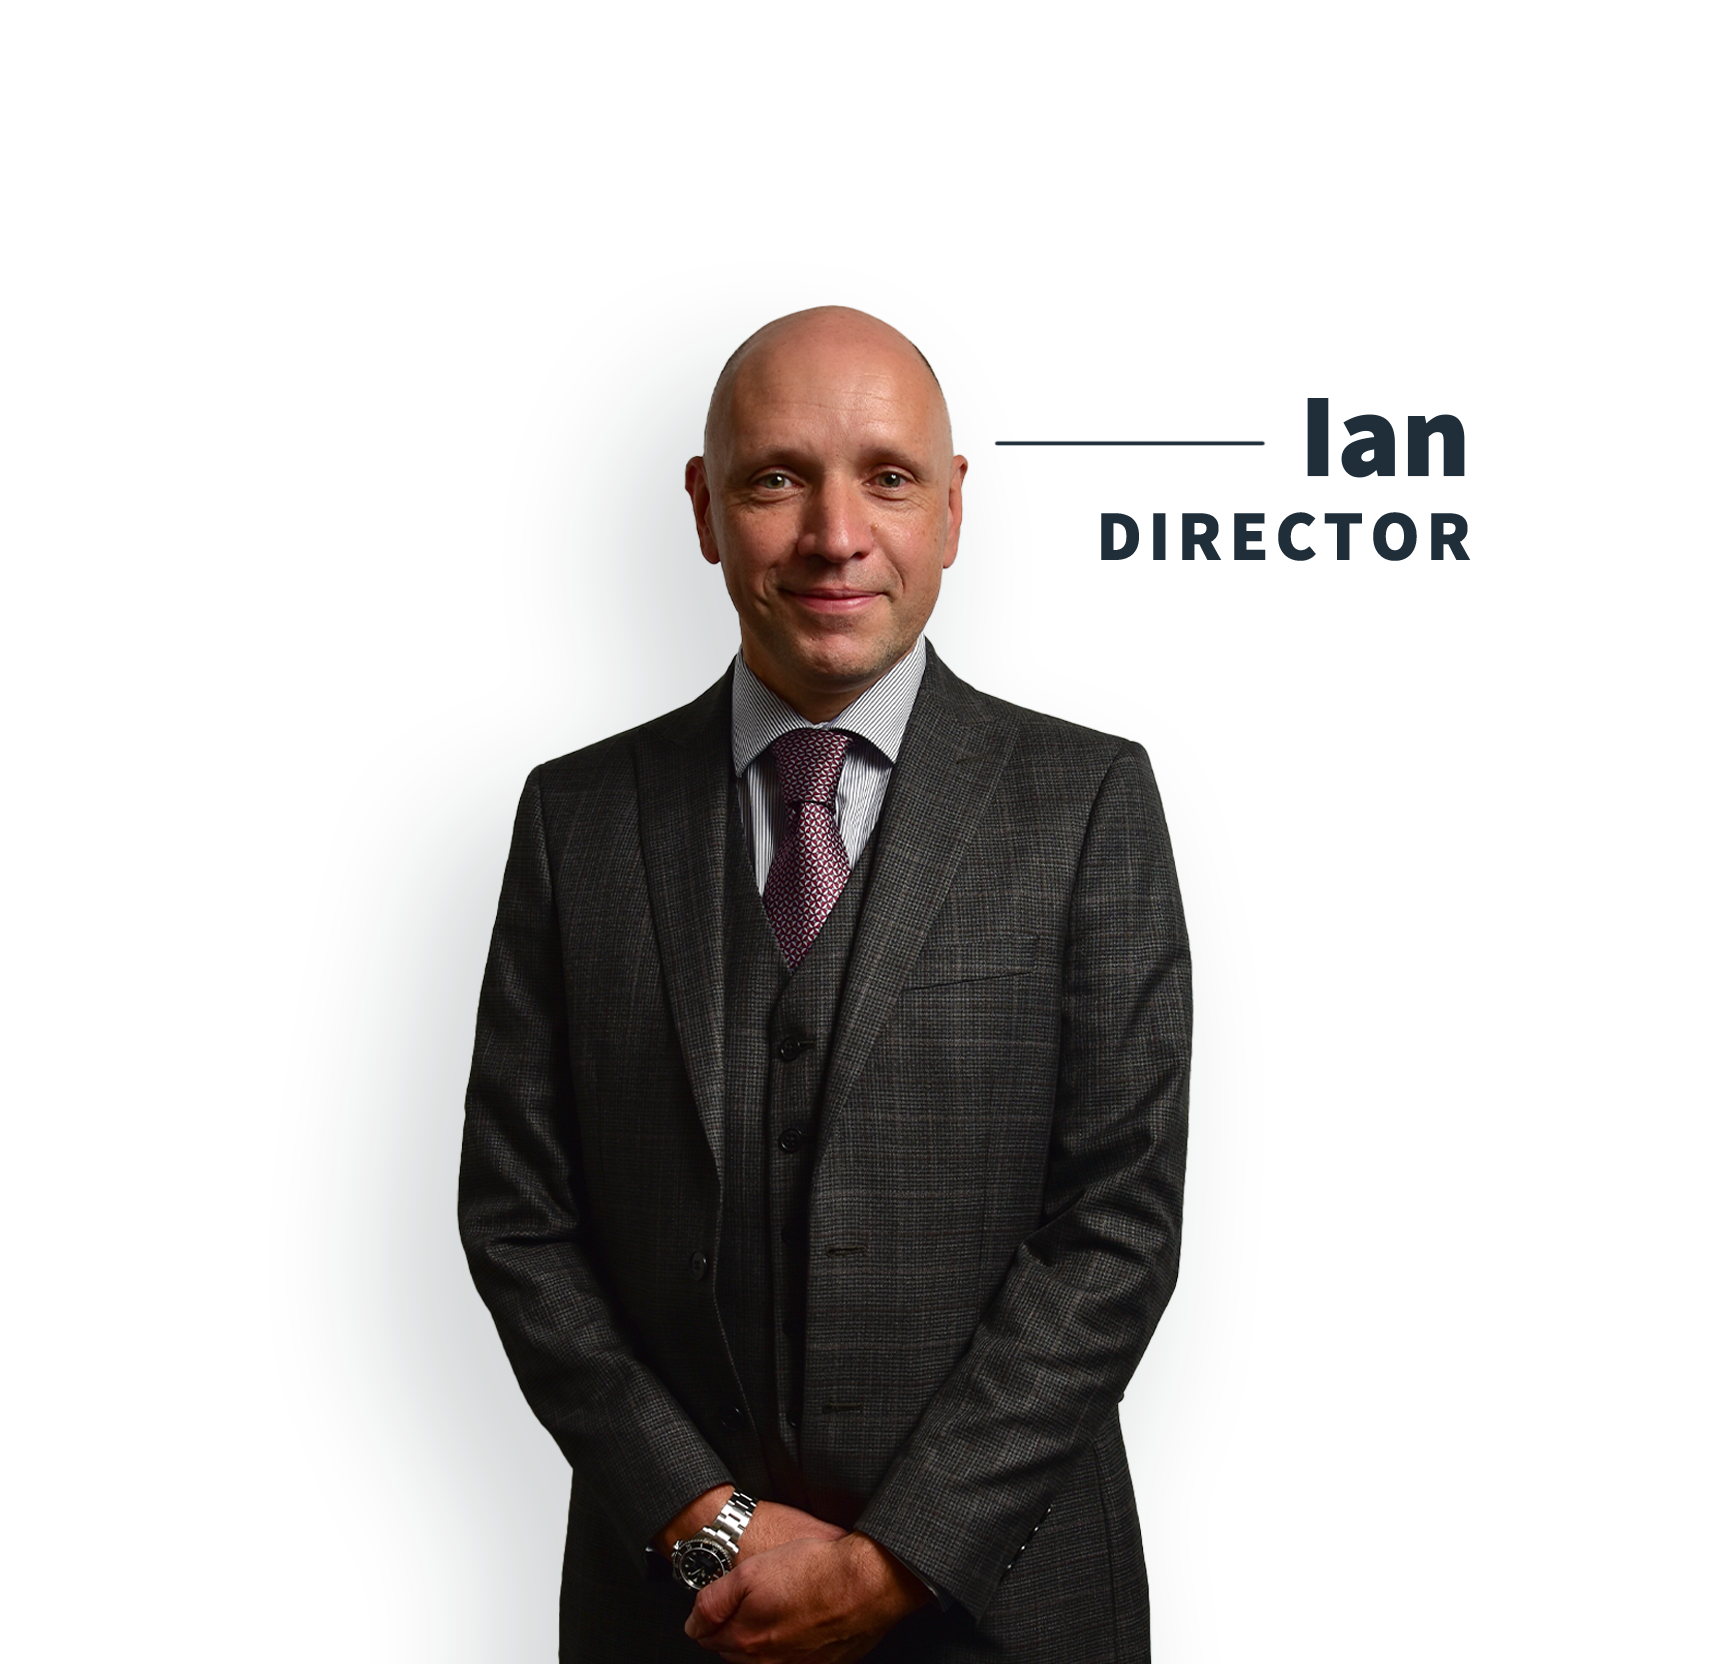 Ian Bevos Company Director